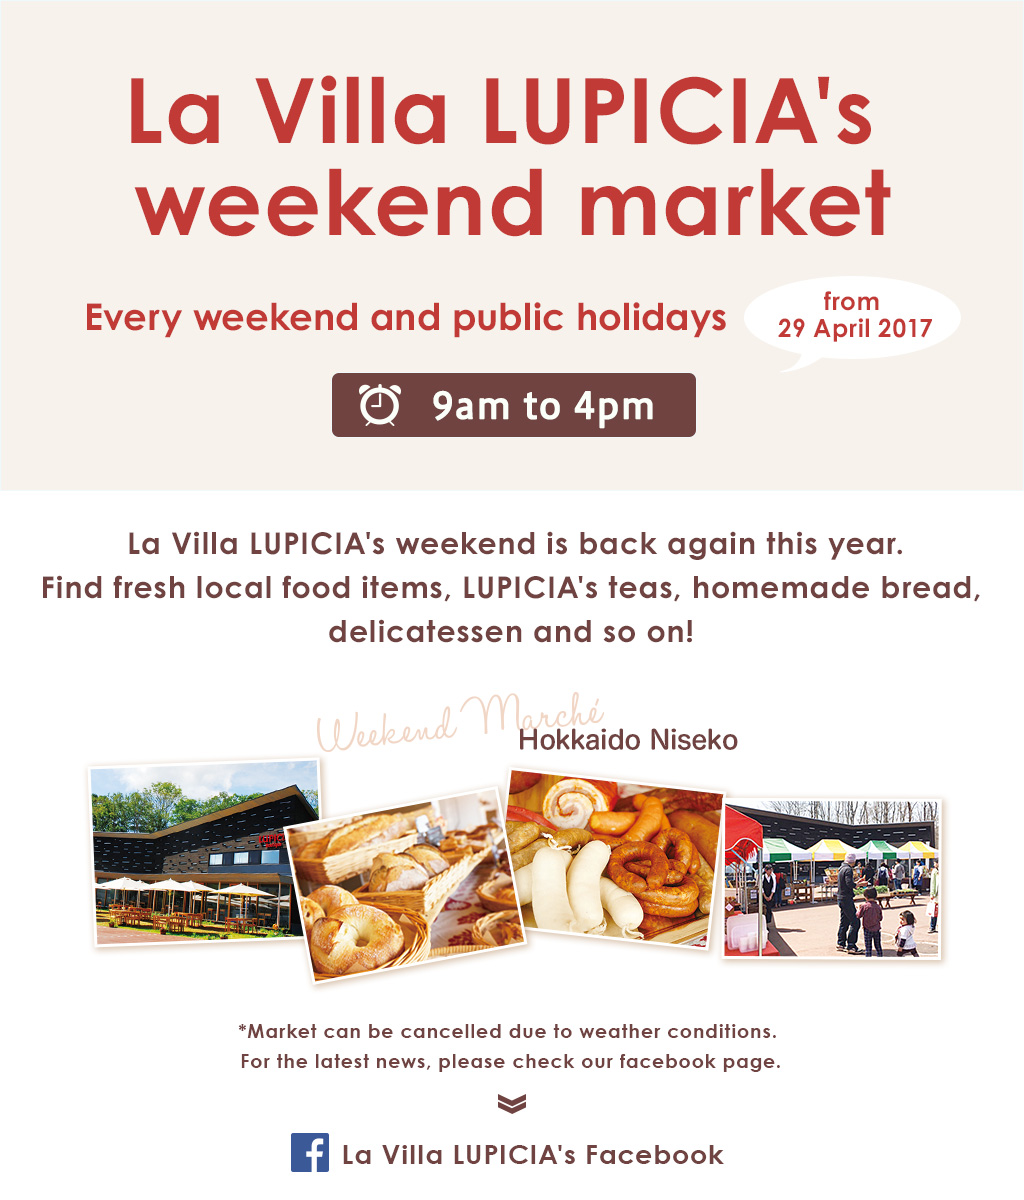 La Villa LUPICIA's weekend market